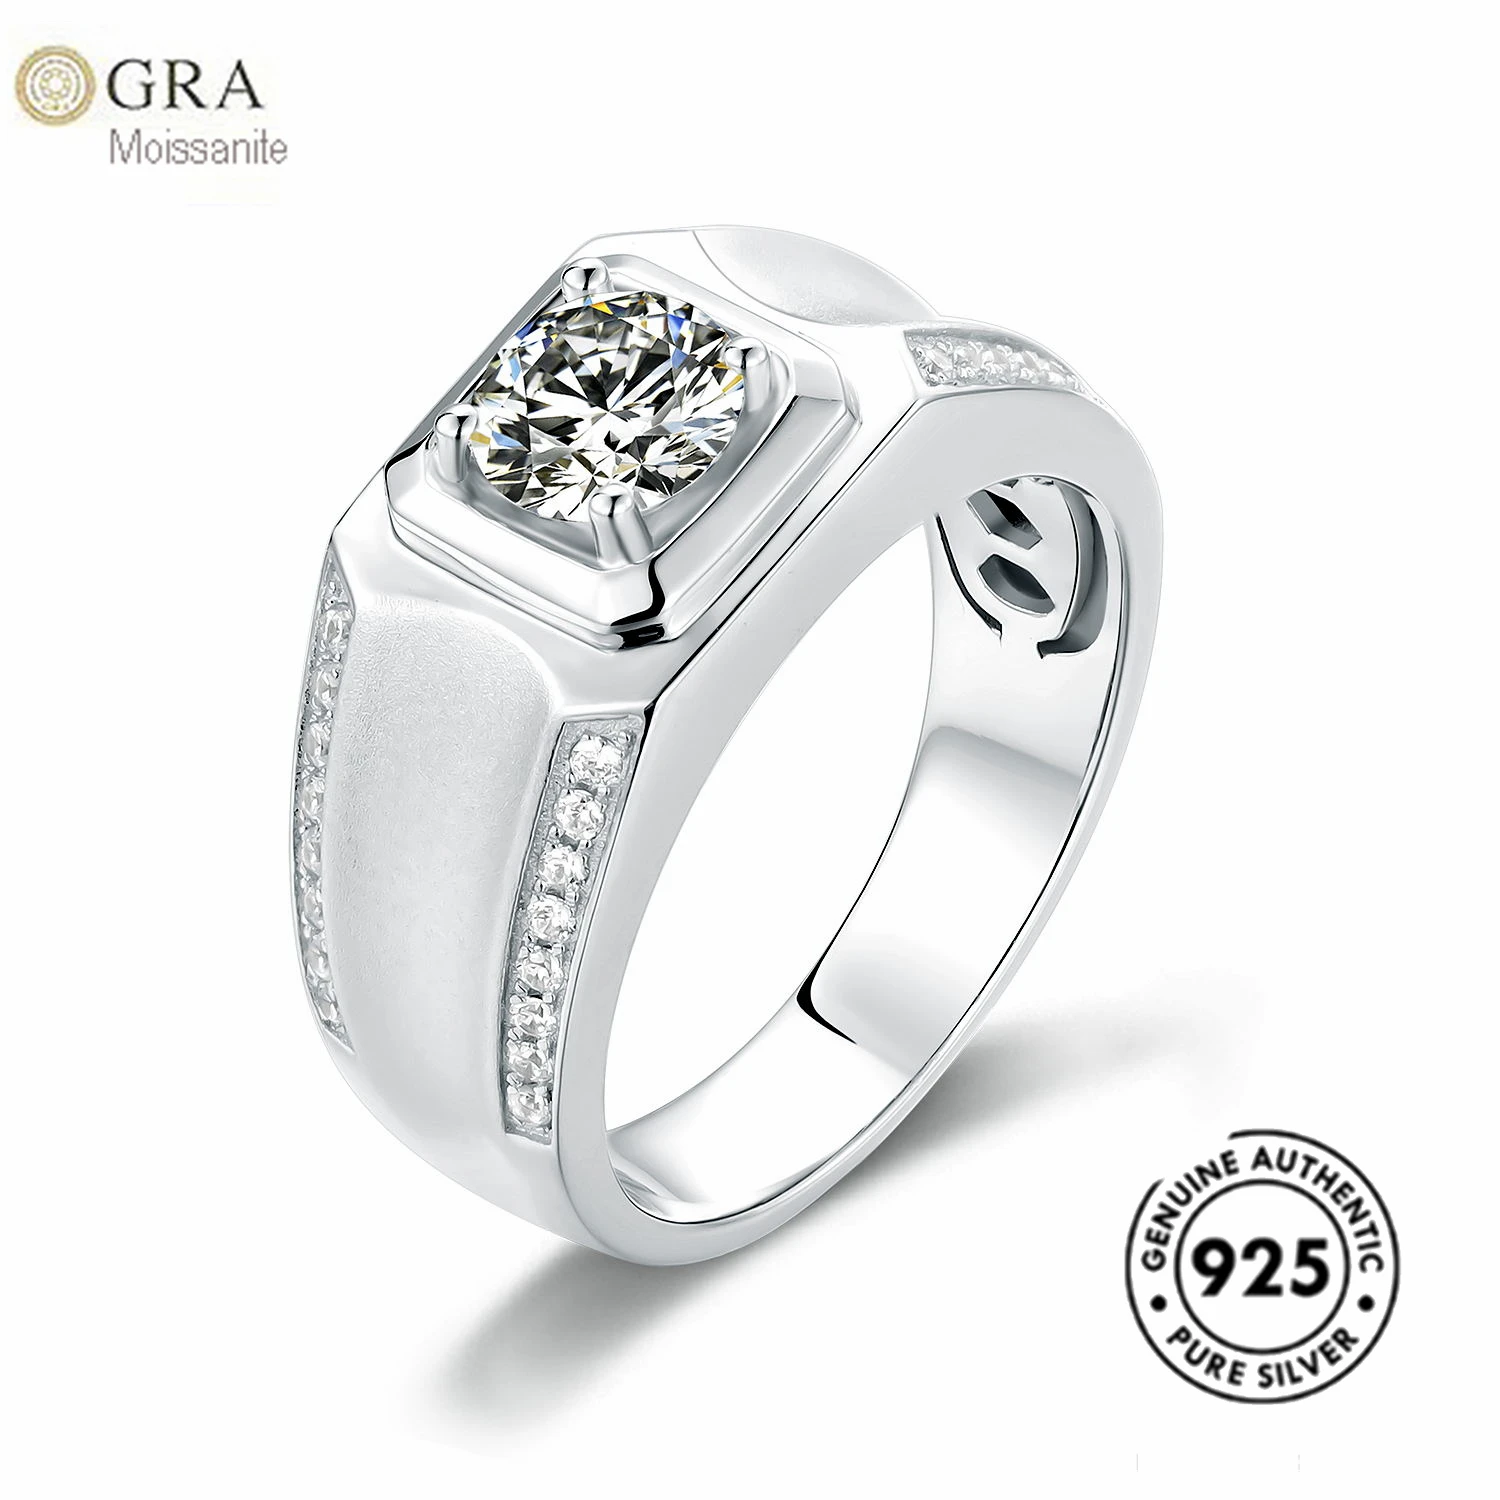 

Новые формы Gra 1 карат моссанит мужское кольцо серебро 925 модные ювелирные изделия готовы к отправке